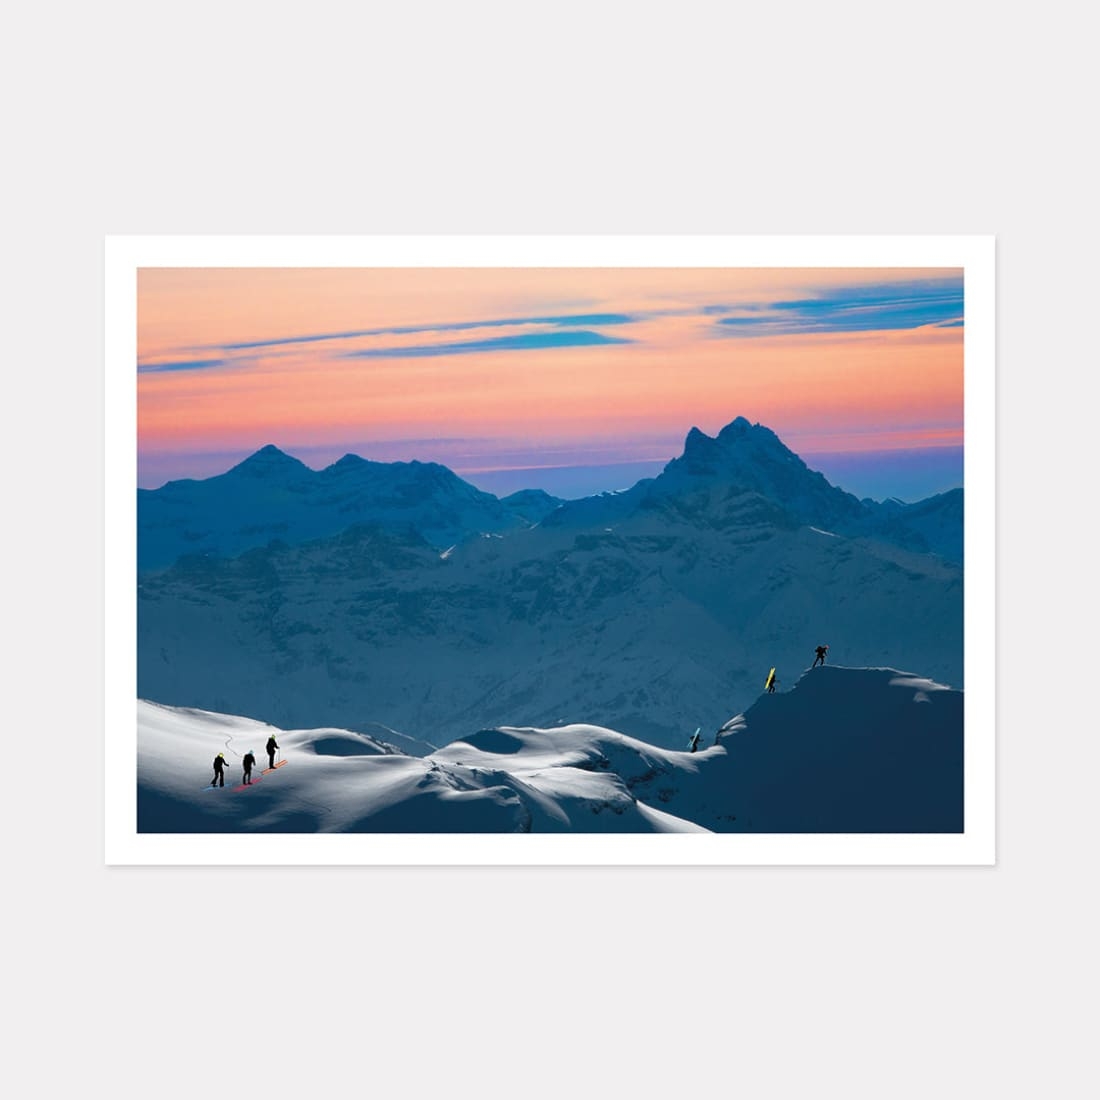 Electric Summit Ski Art Print, A2 (59.4cm x 42cm) unframed print – Powderhound